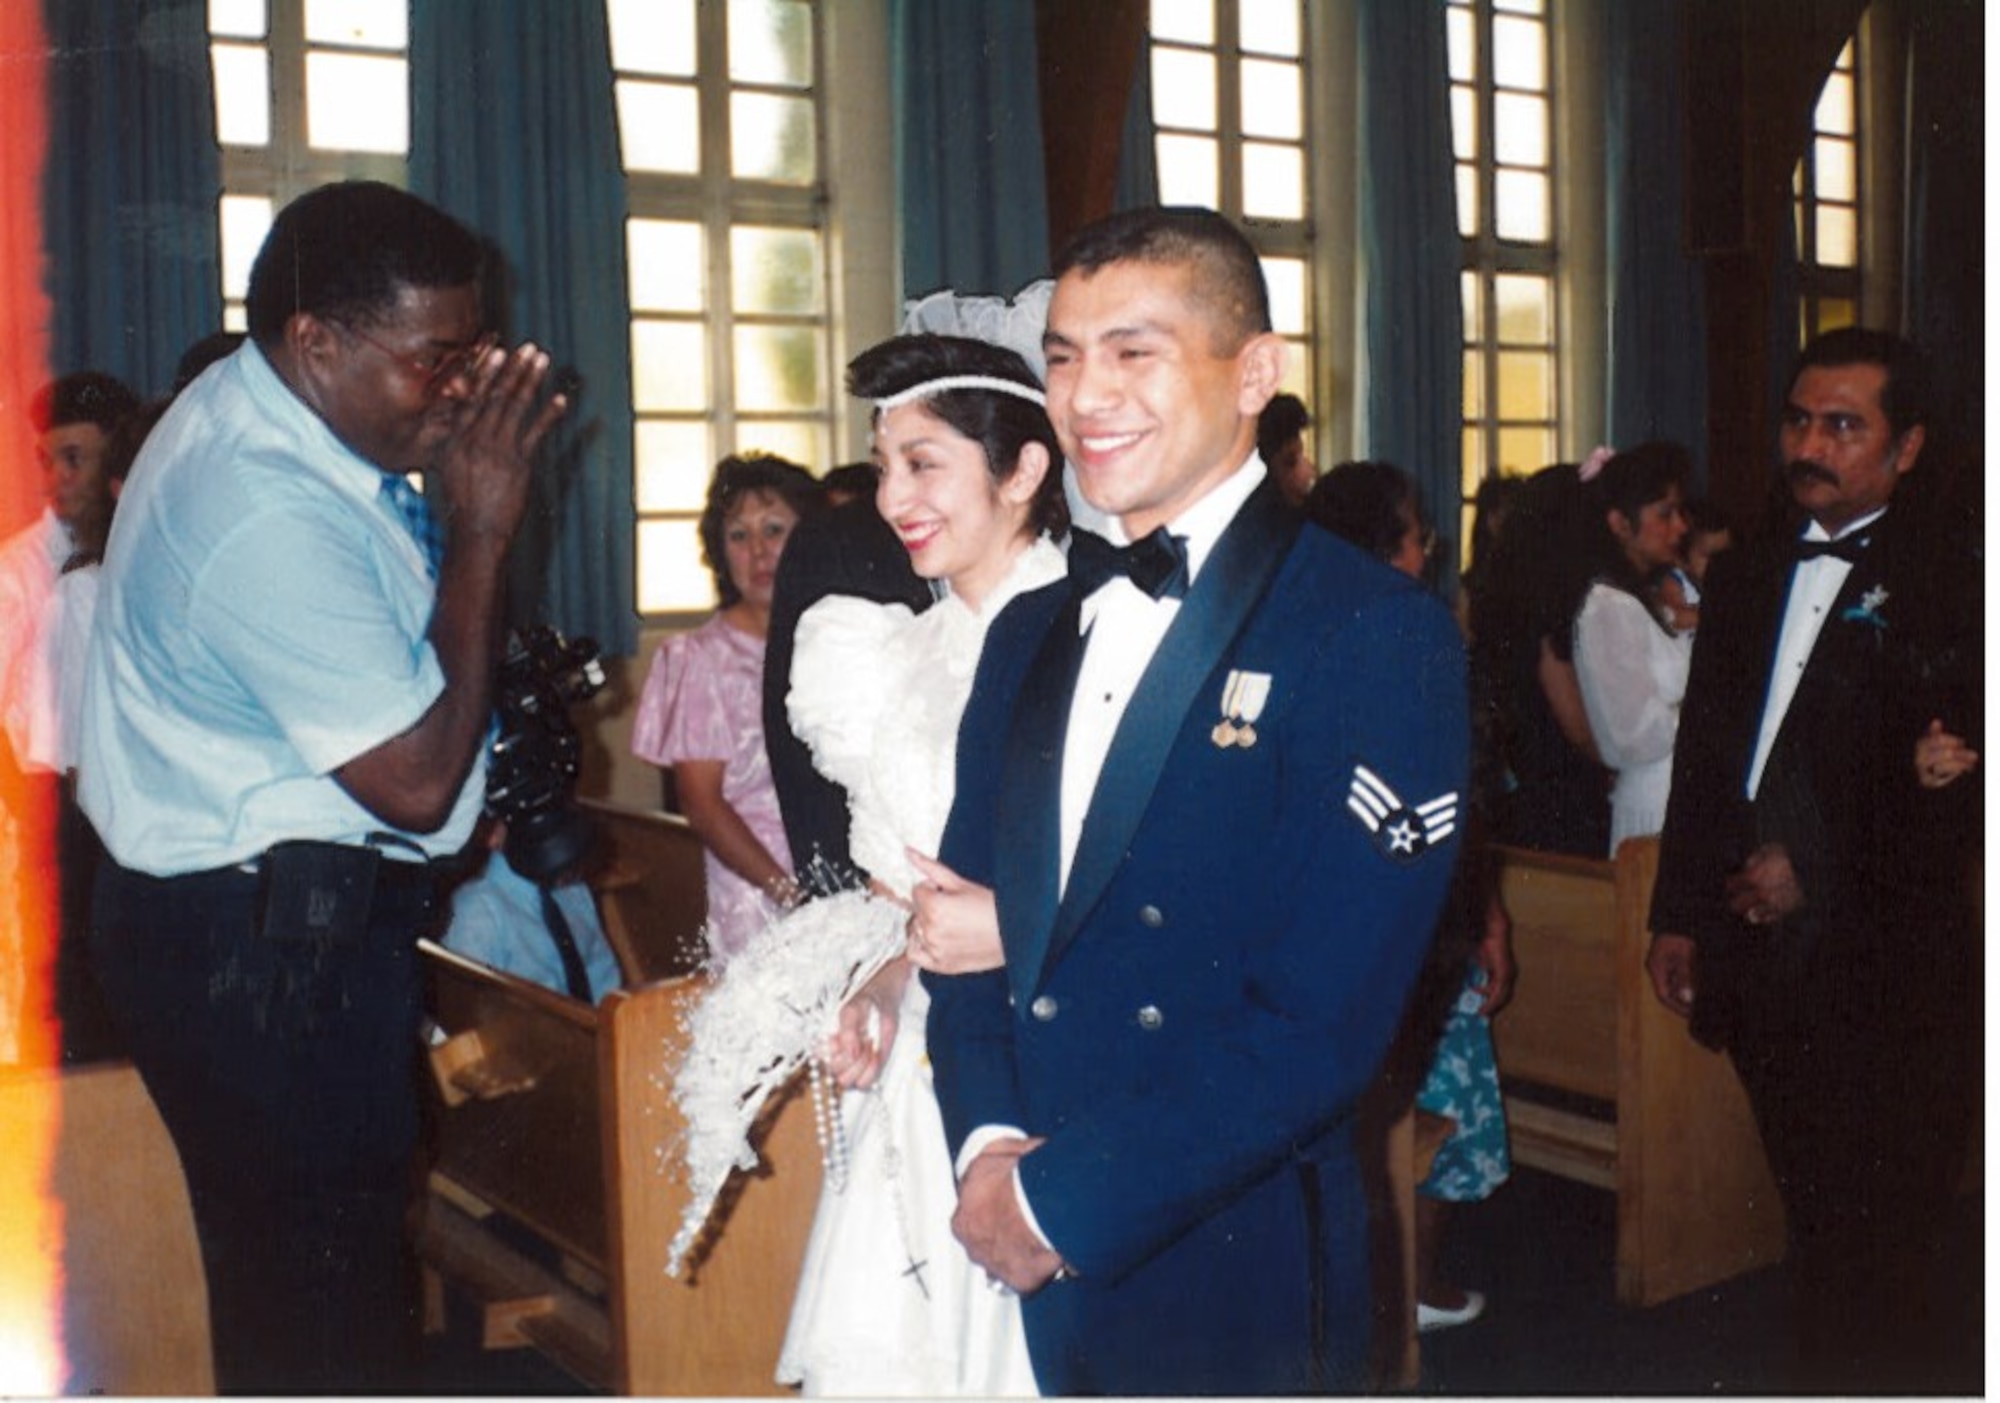 Then Senior Airman Gerardo Tapia walks down the aisle with his wife, Alice, at their wedding May 26, 1990, in San Antonio. (Courtesy photo)